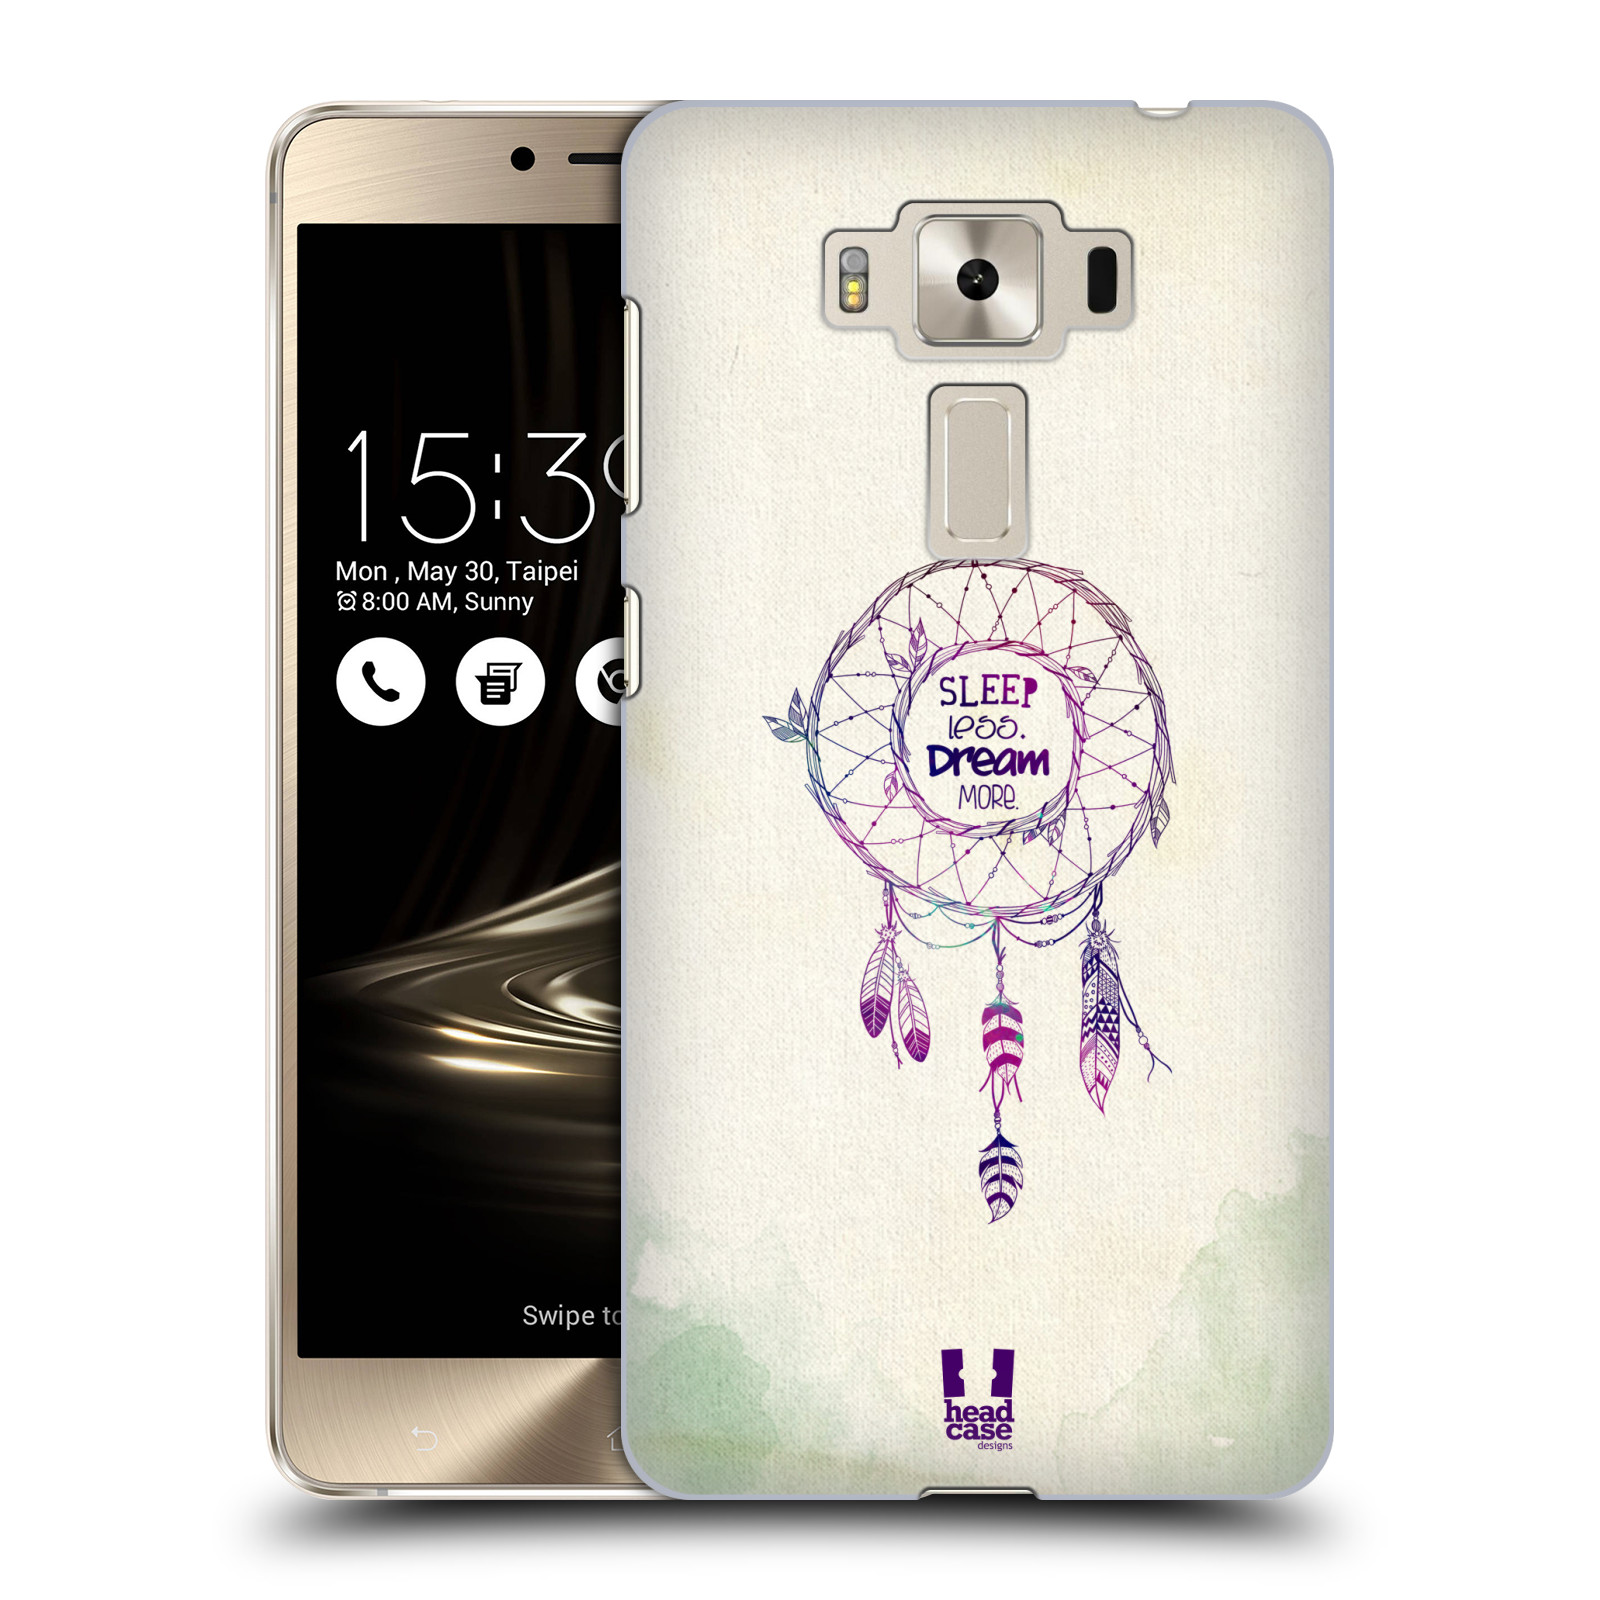 HEAD CASE plastový obal na mobil Asus Zenfone 3 DELUXE ZS550KL vzor Lapač snů ZELENÁ A FIALOVÁ